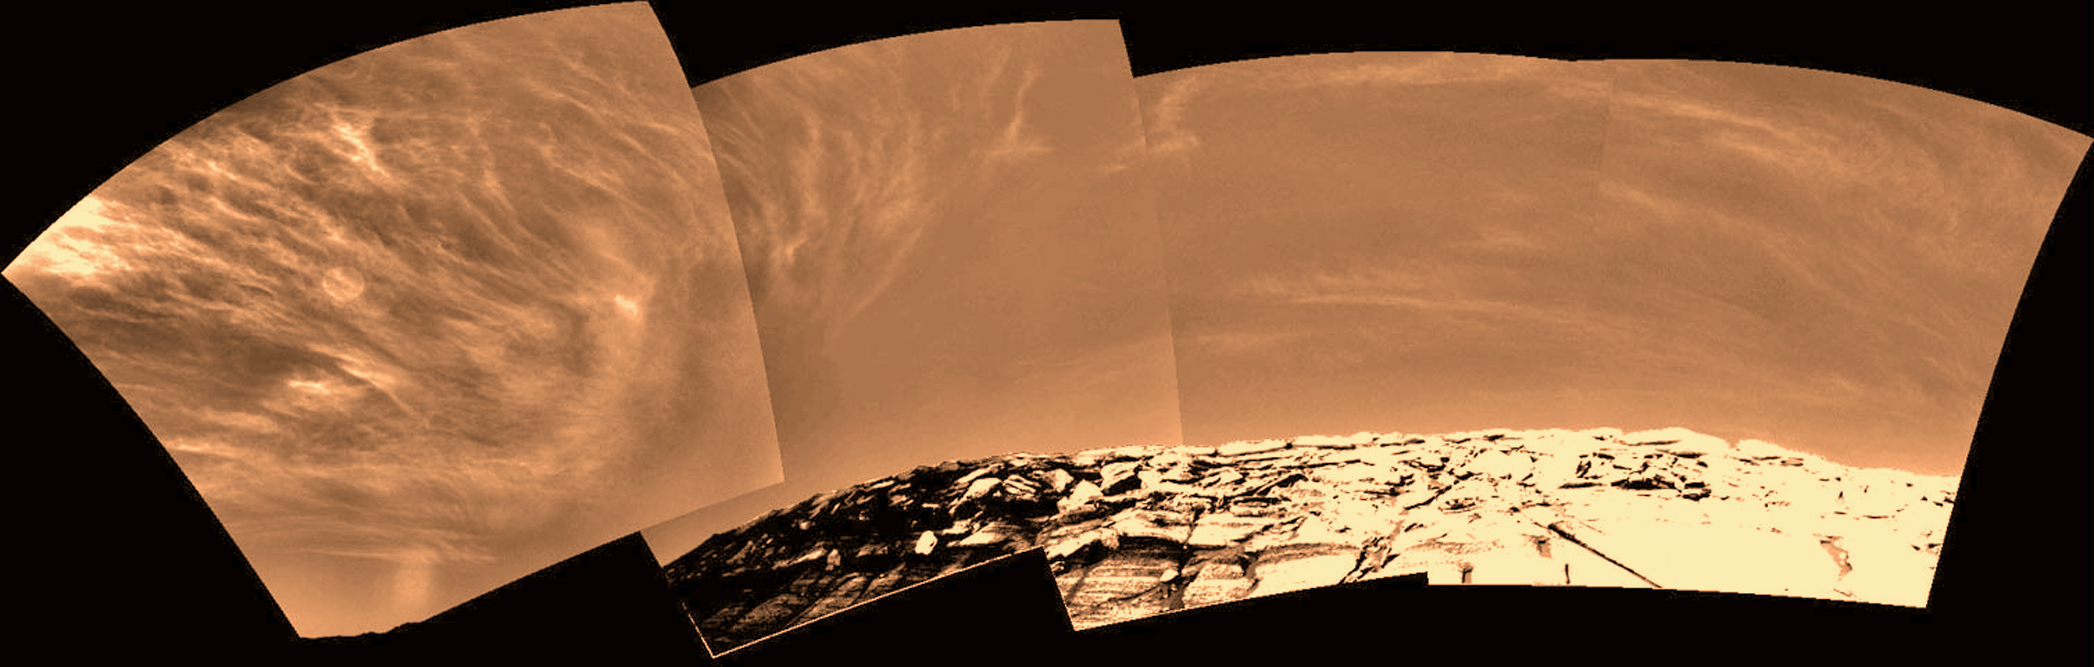 Серебристые облака на Марсе